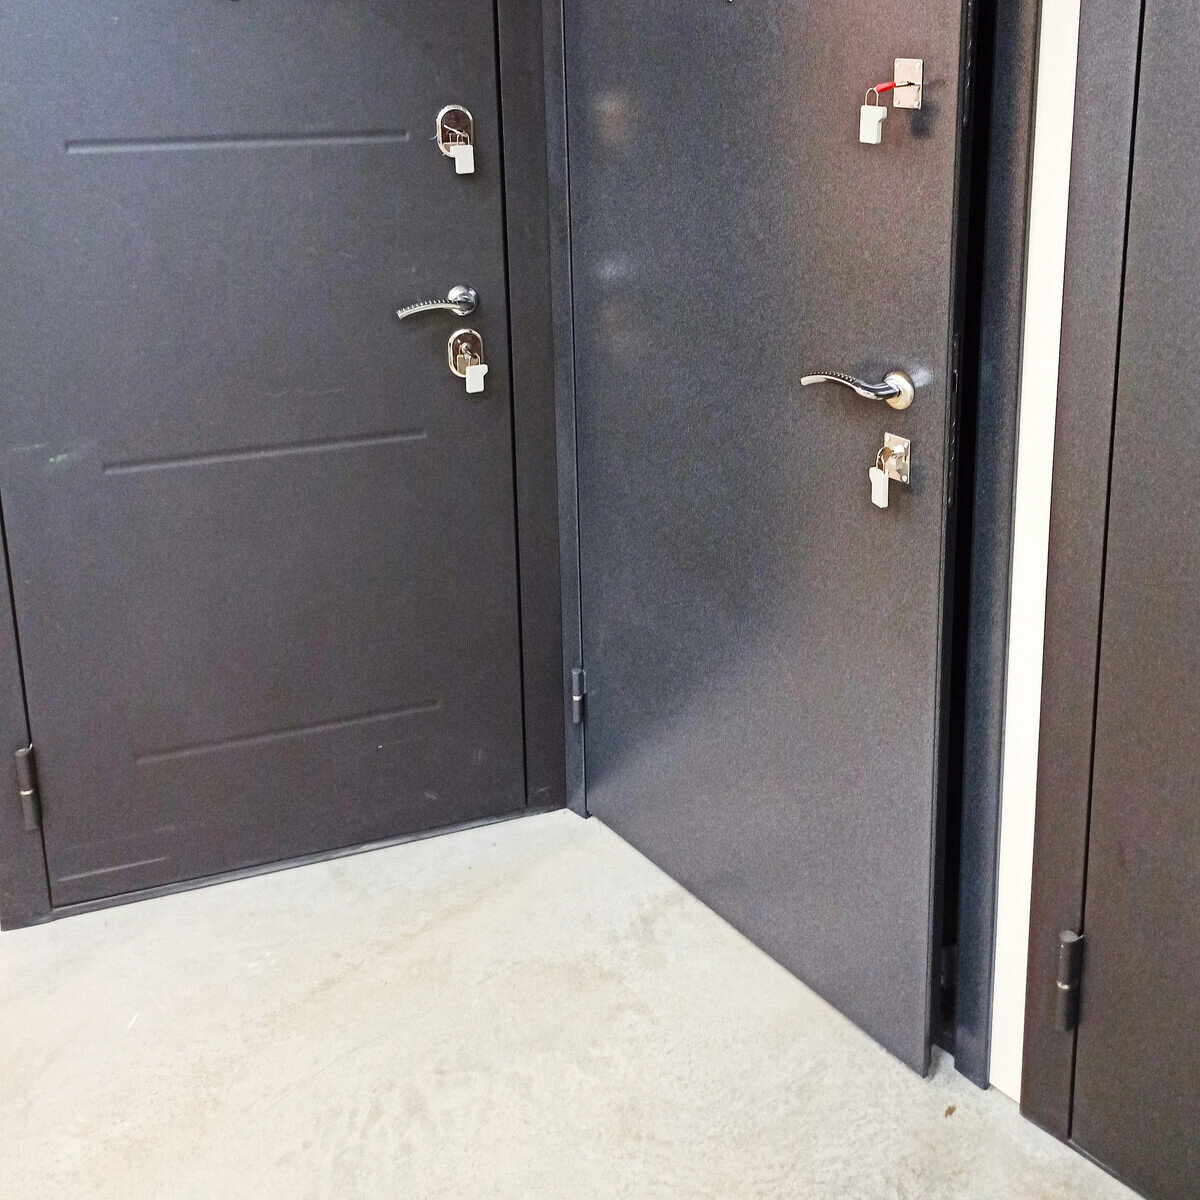 Можно ли менять сторону открывания входных дверей в квартире? Могут заставить демонтировать дверь